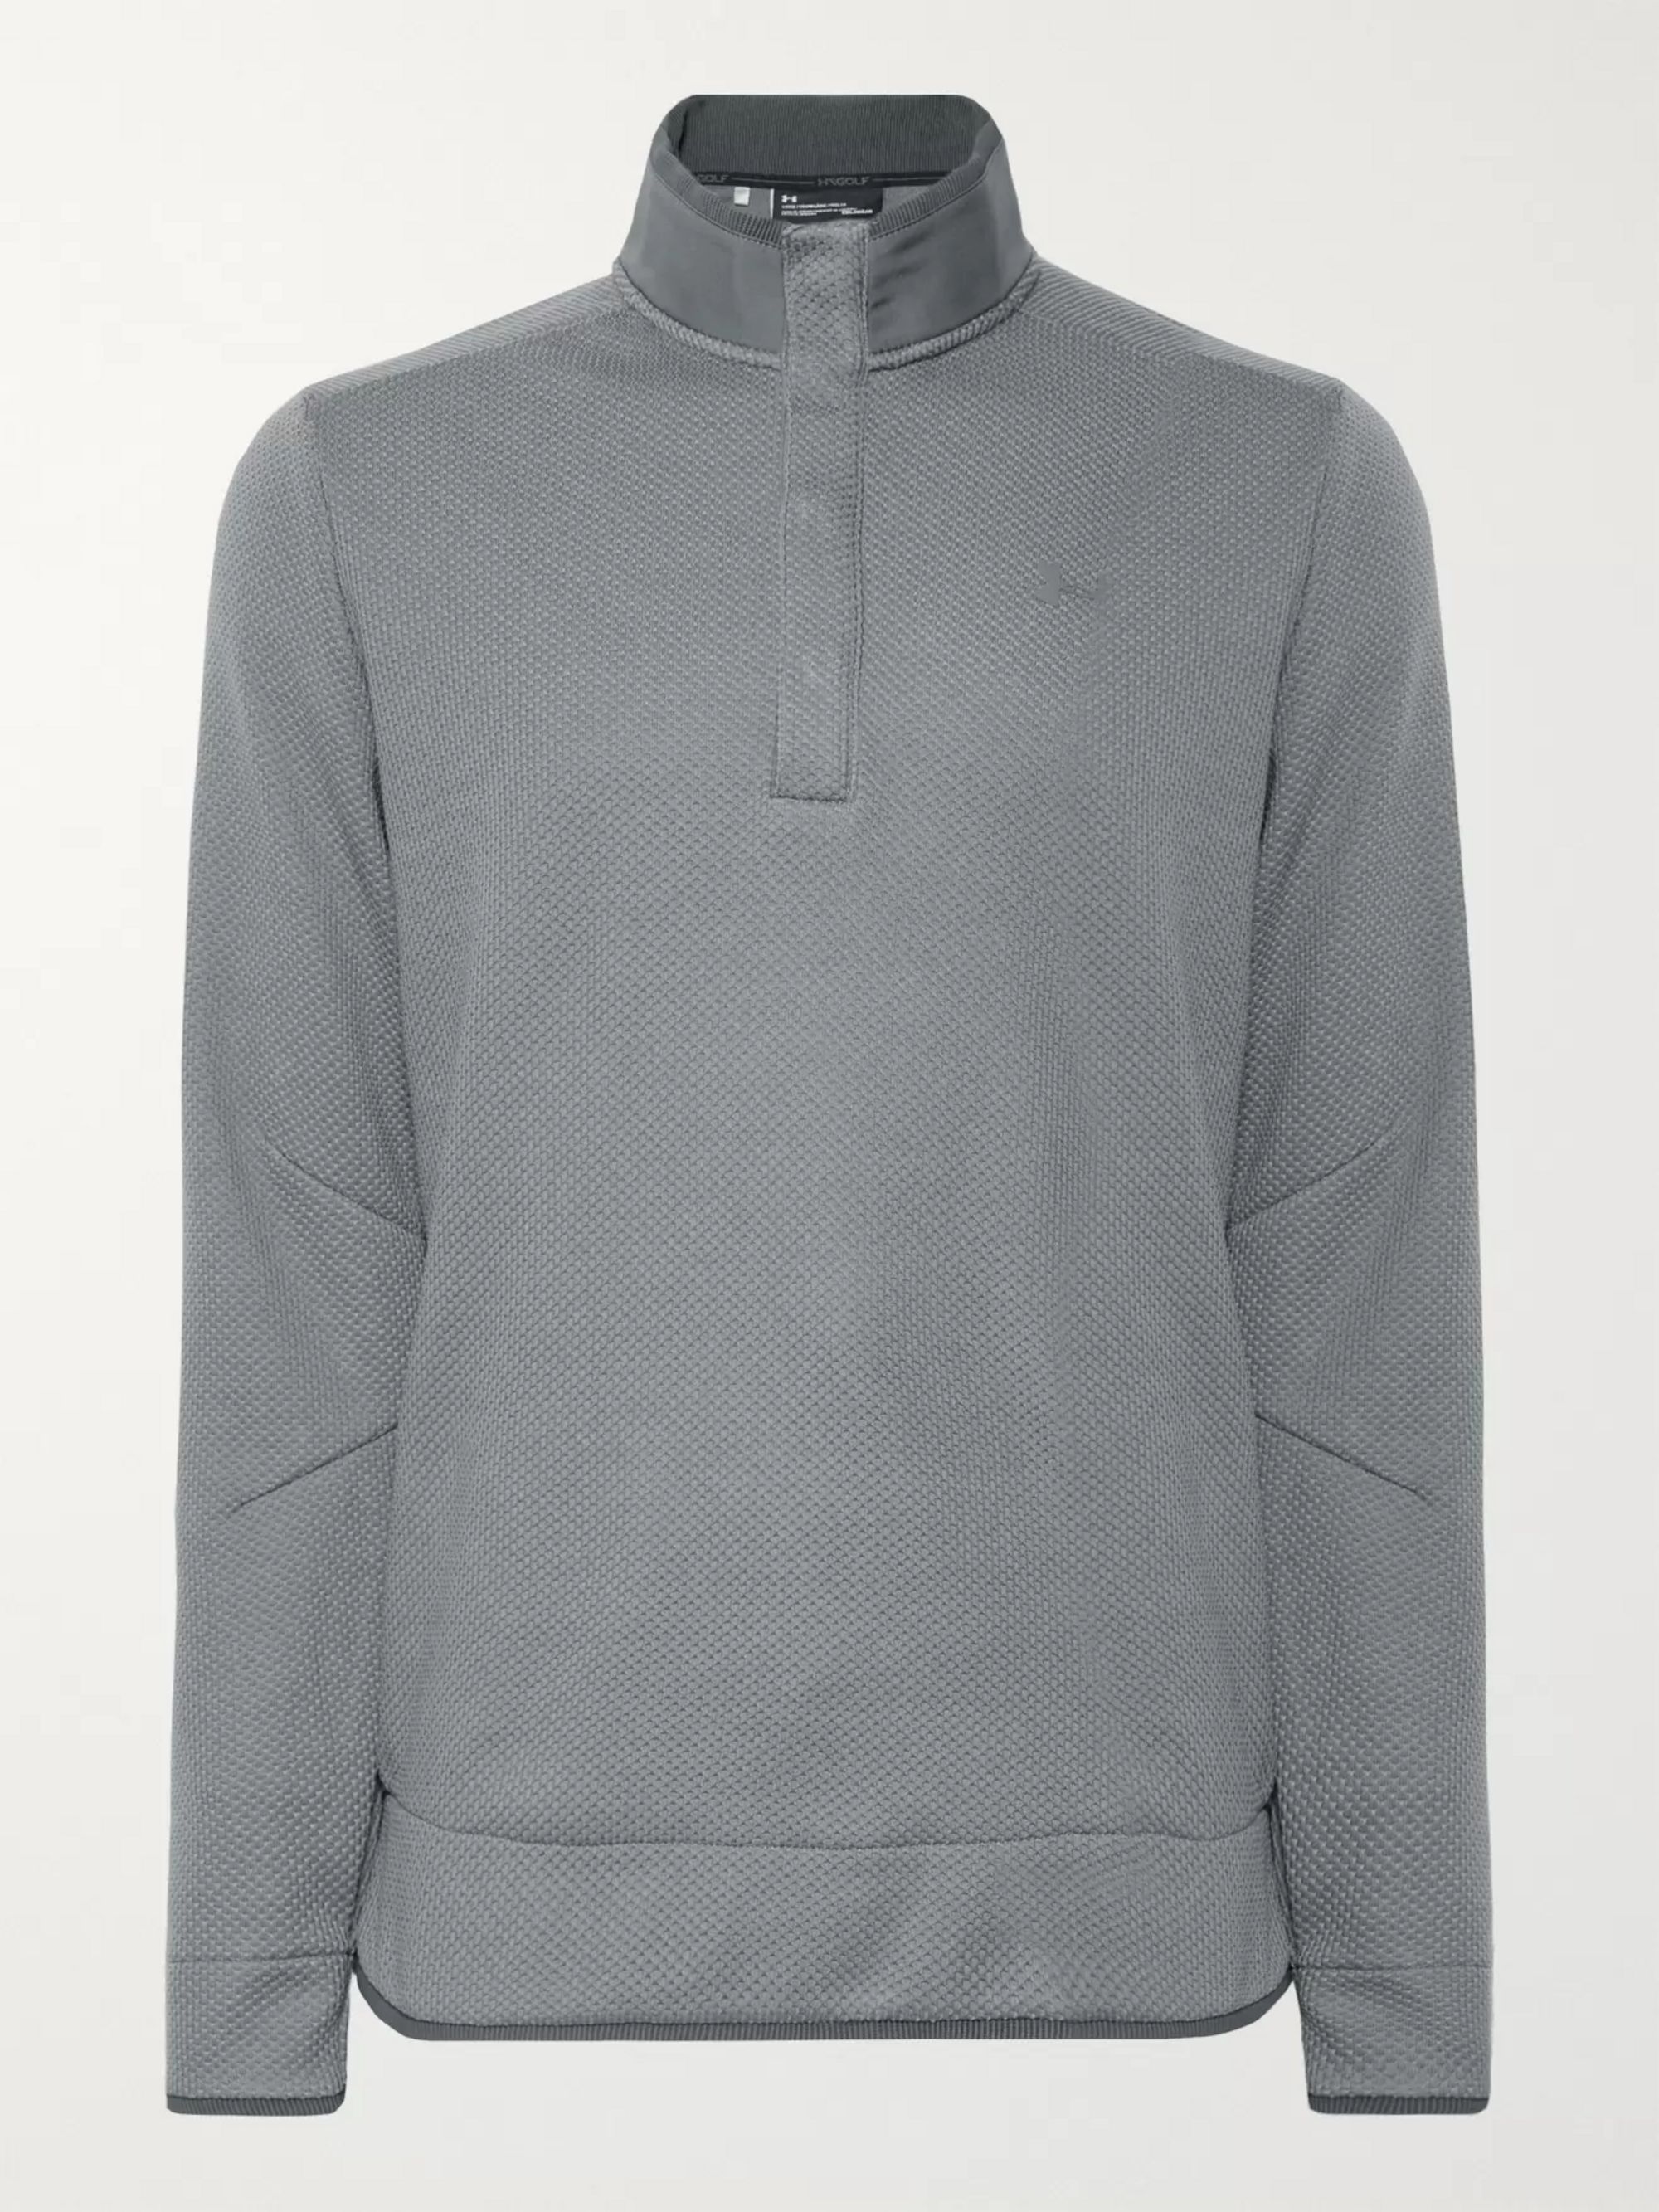 Gray Storm SweaterFleece ColdGear Golf 